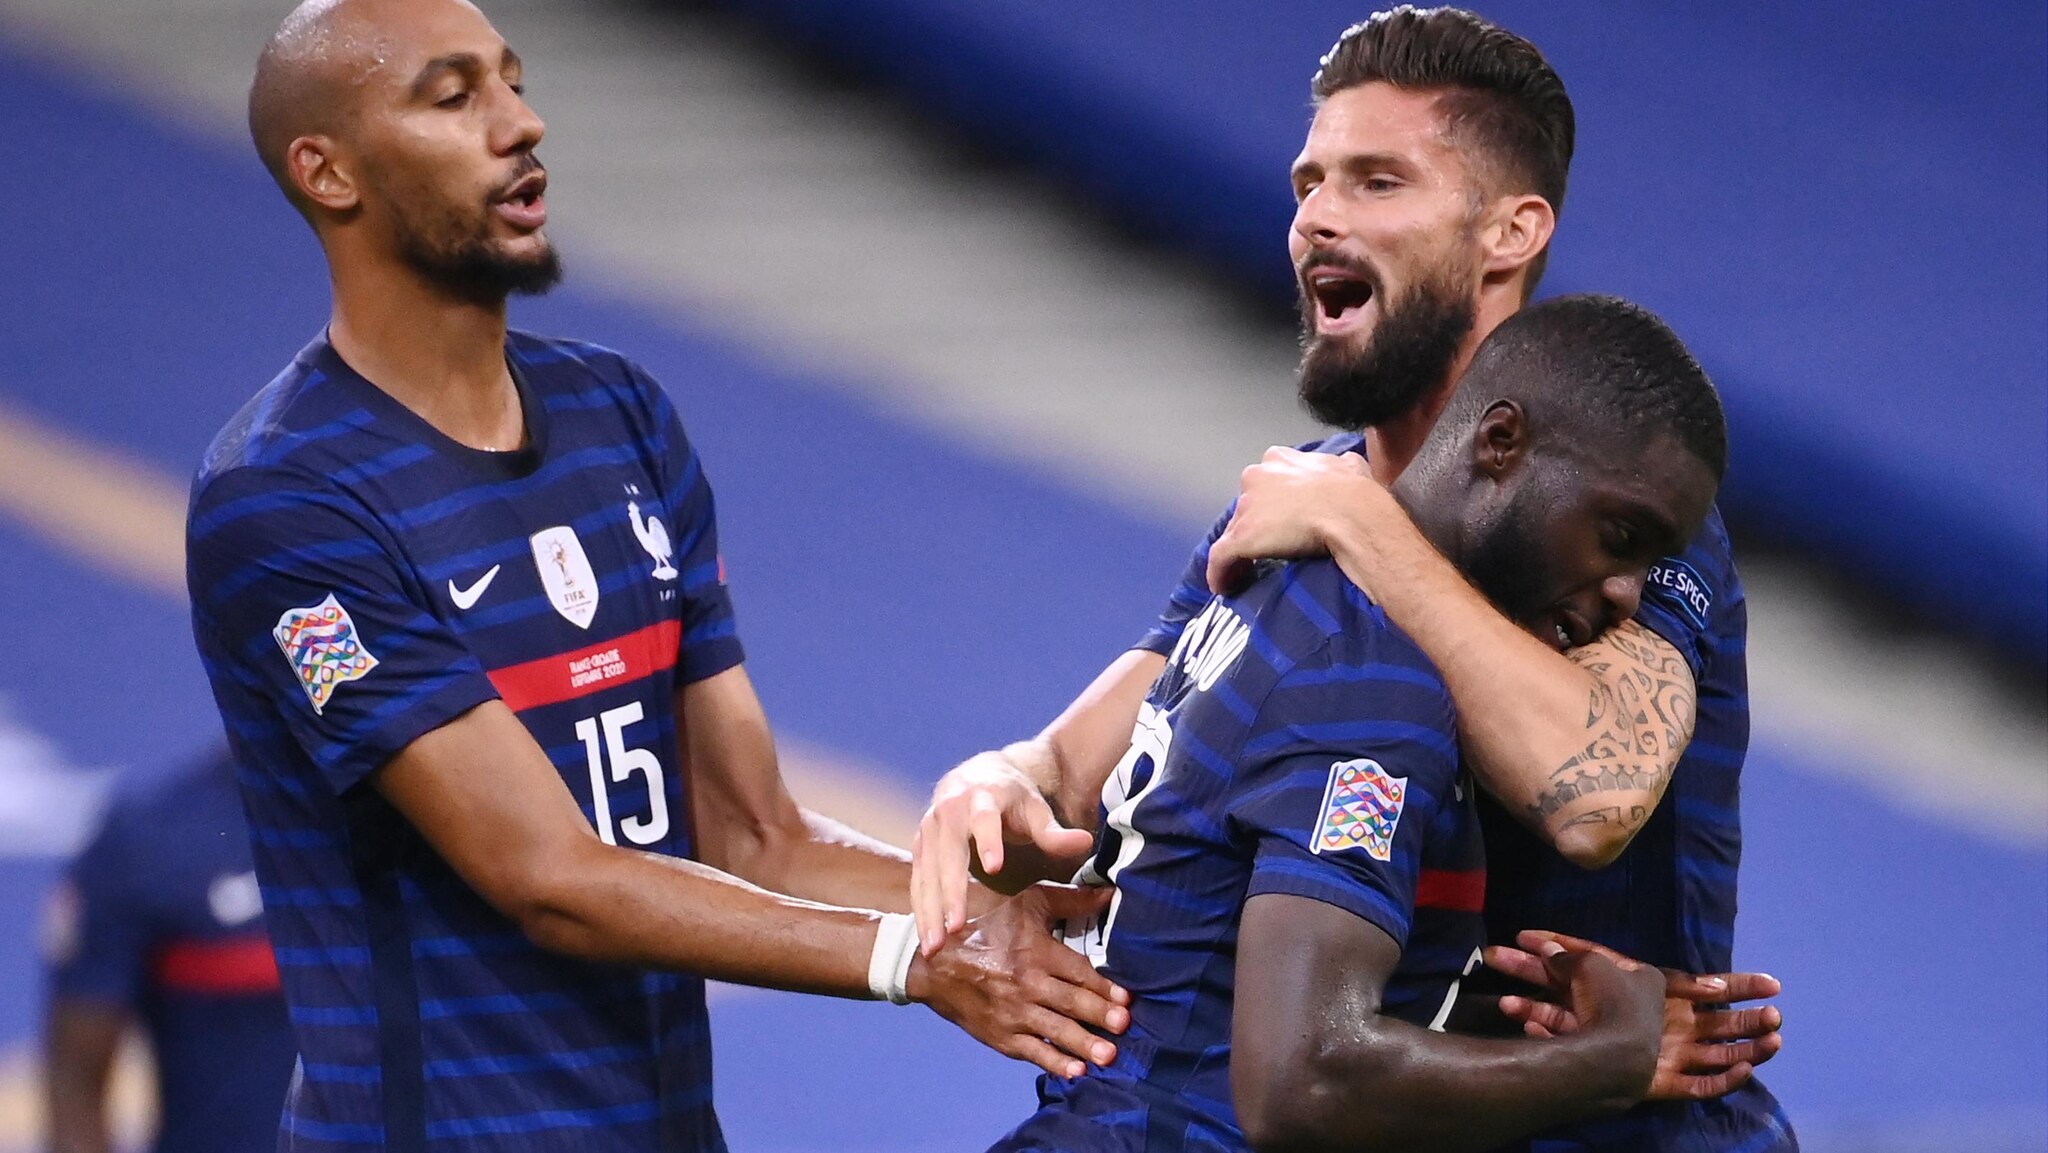 France 4-2 Croatia: report